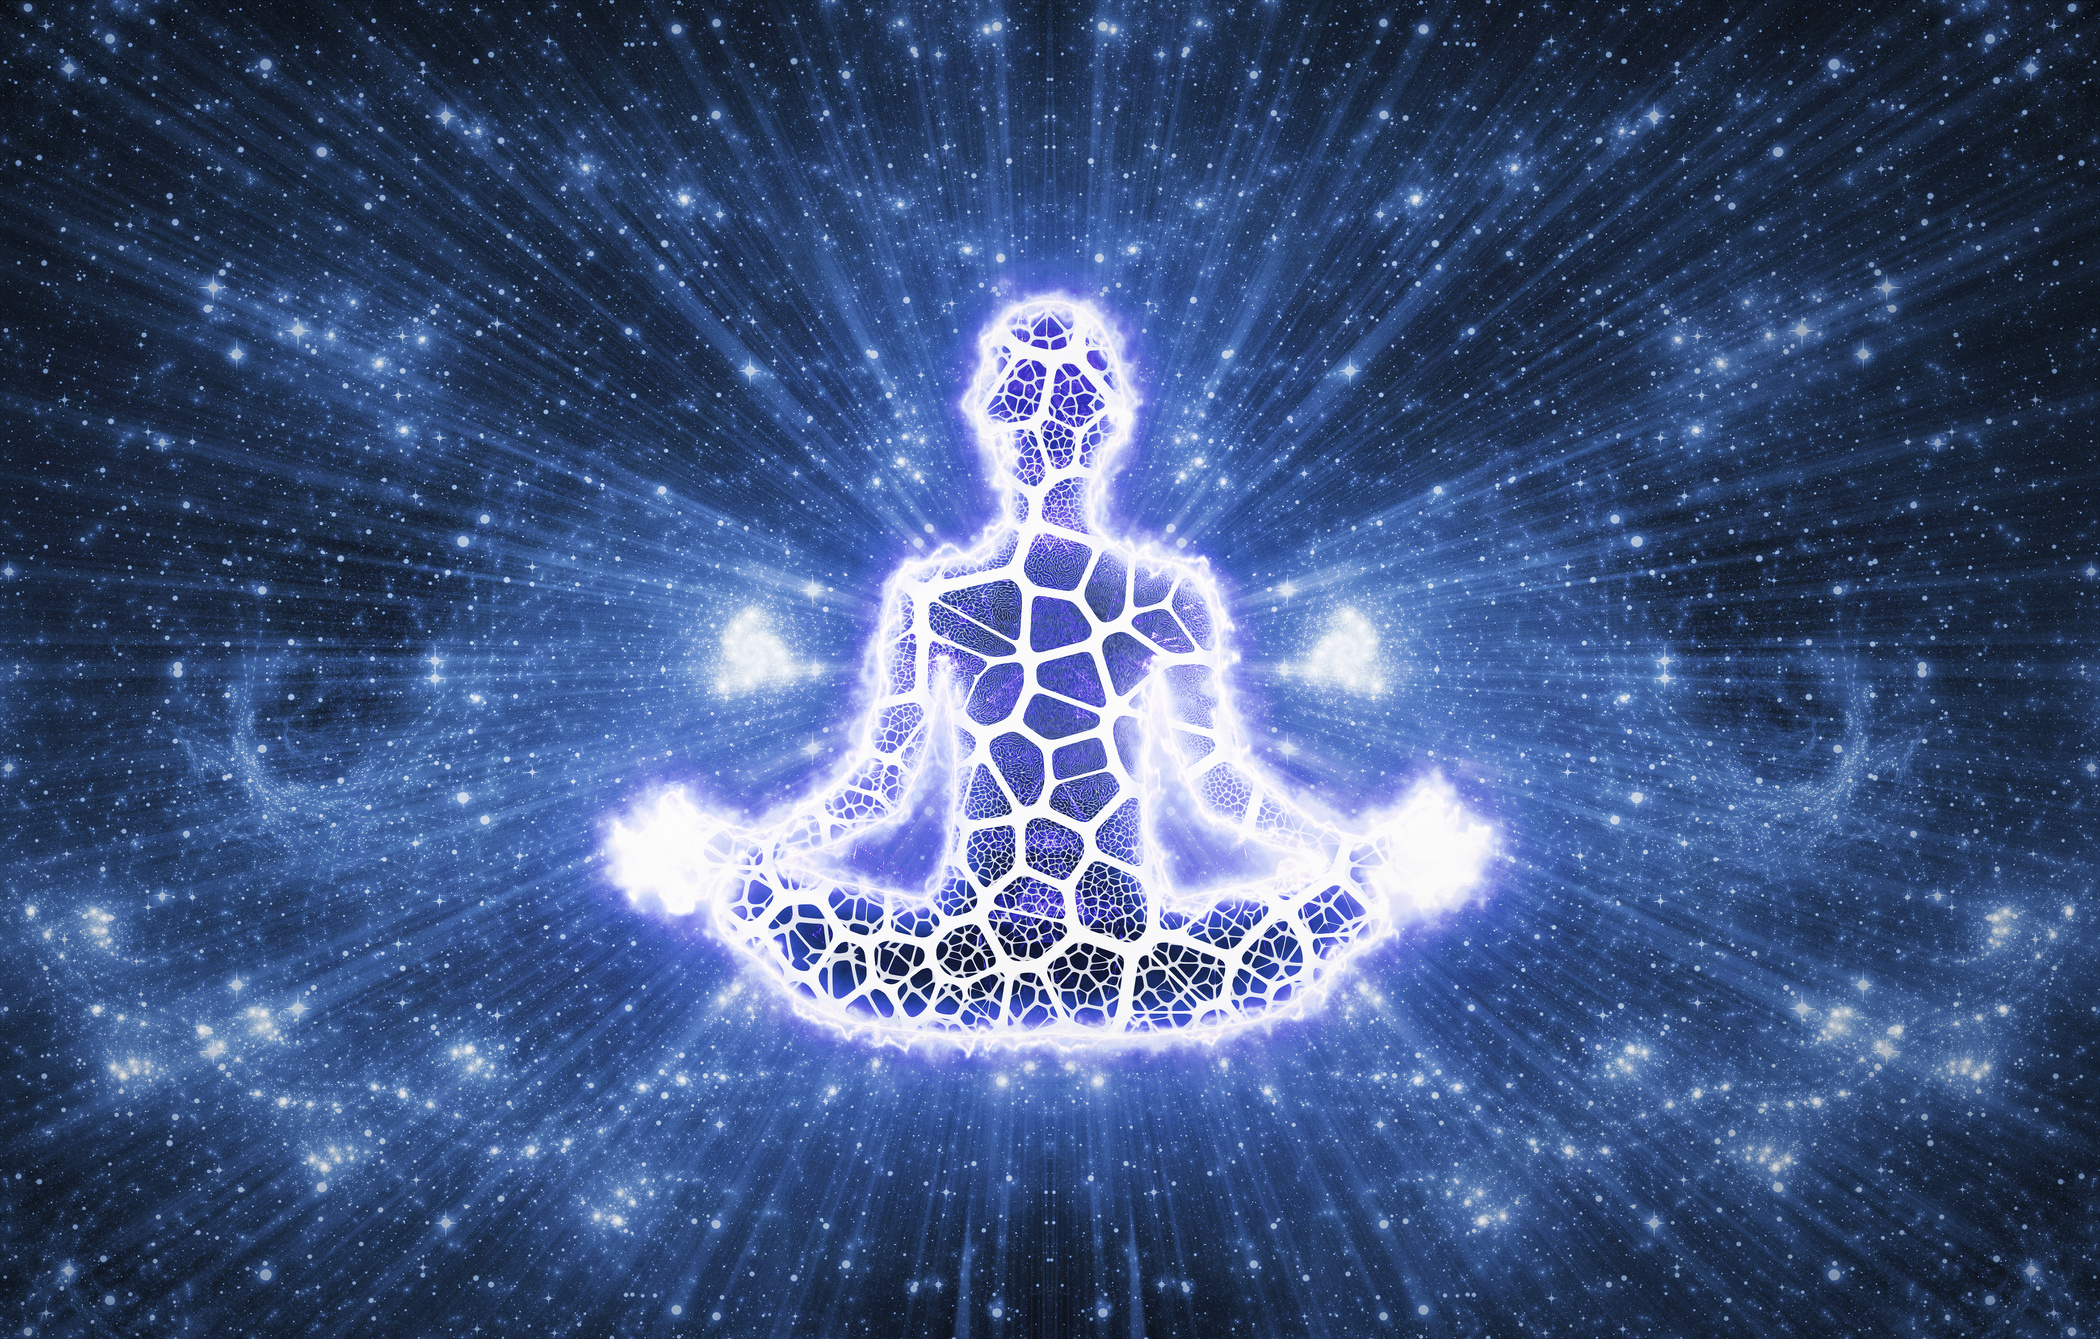 Meditation Abstract Spiritualism Yoga Concept V2